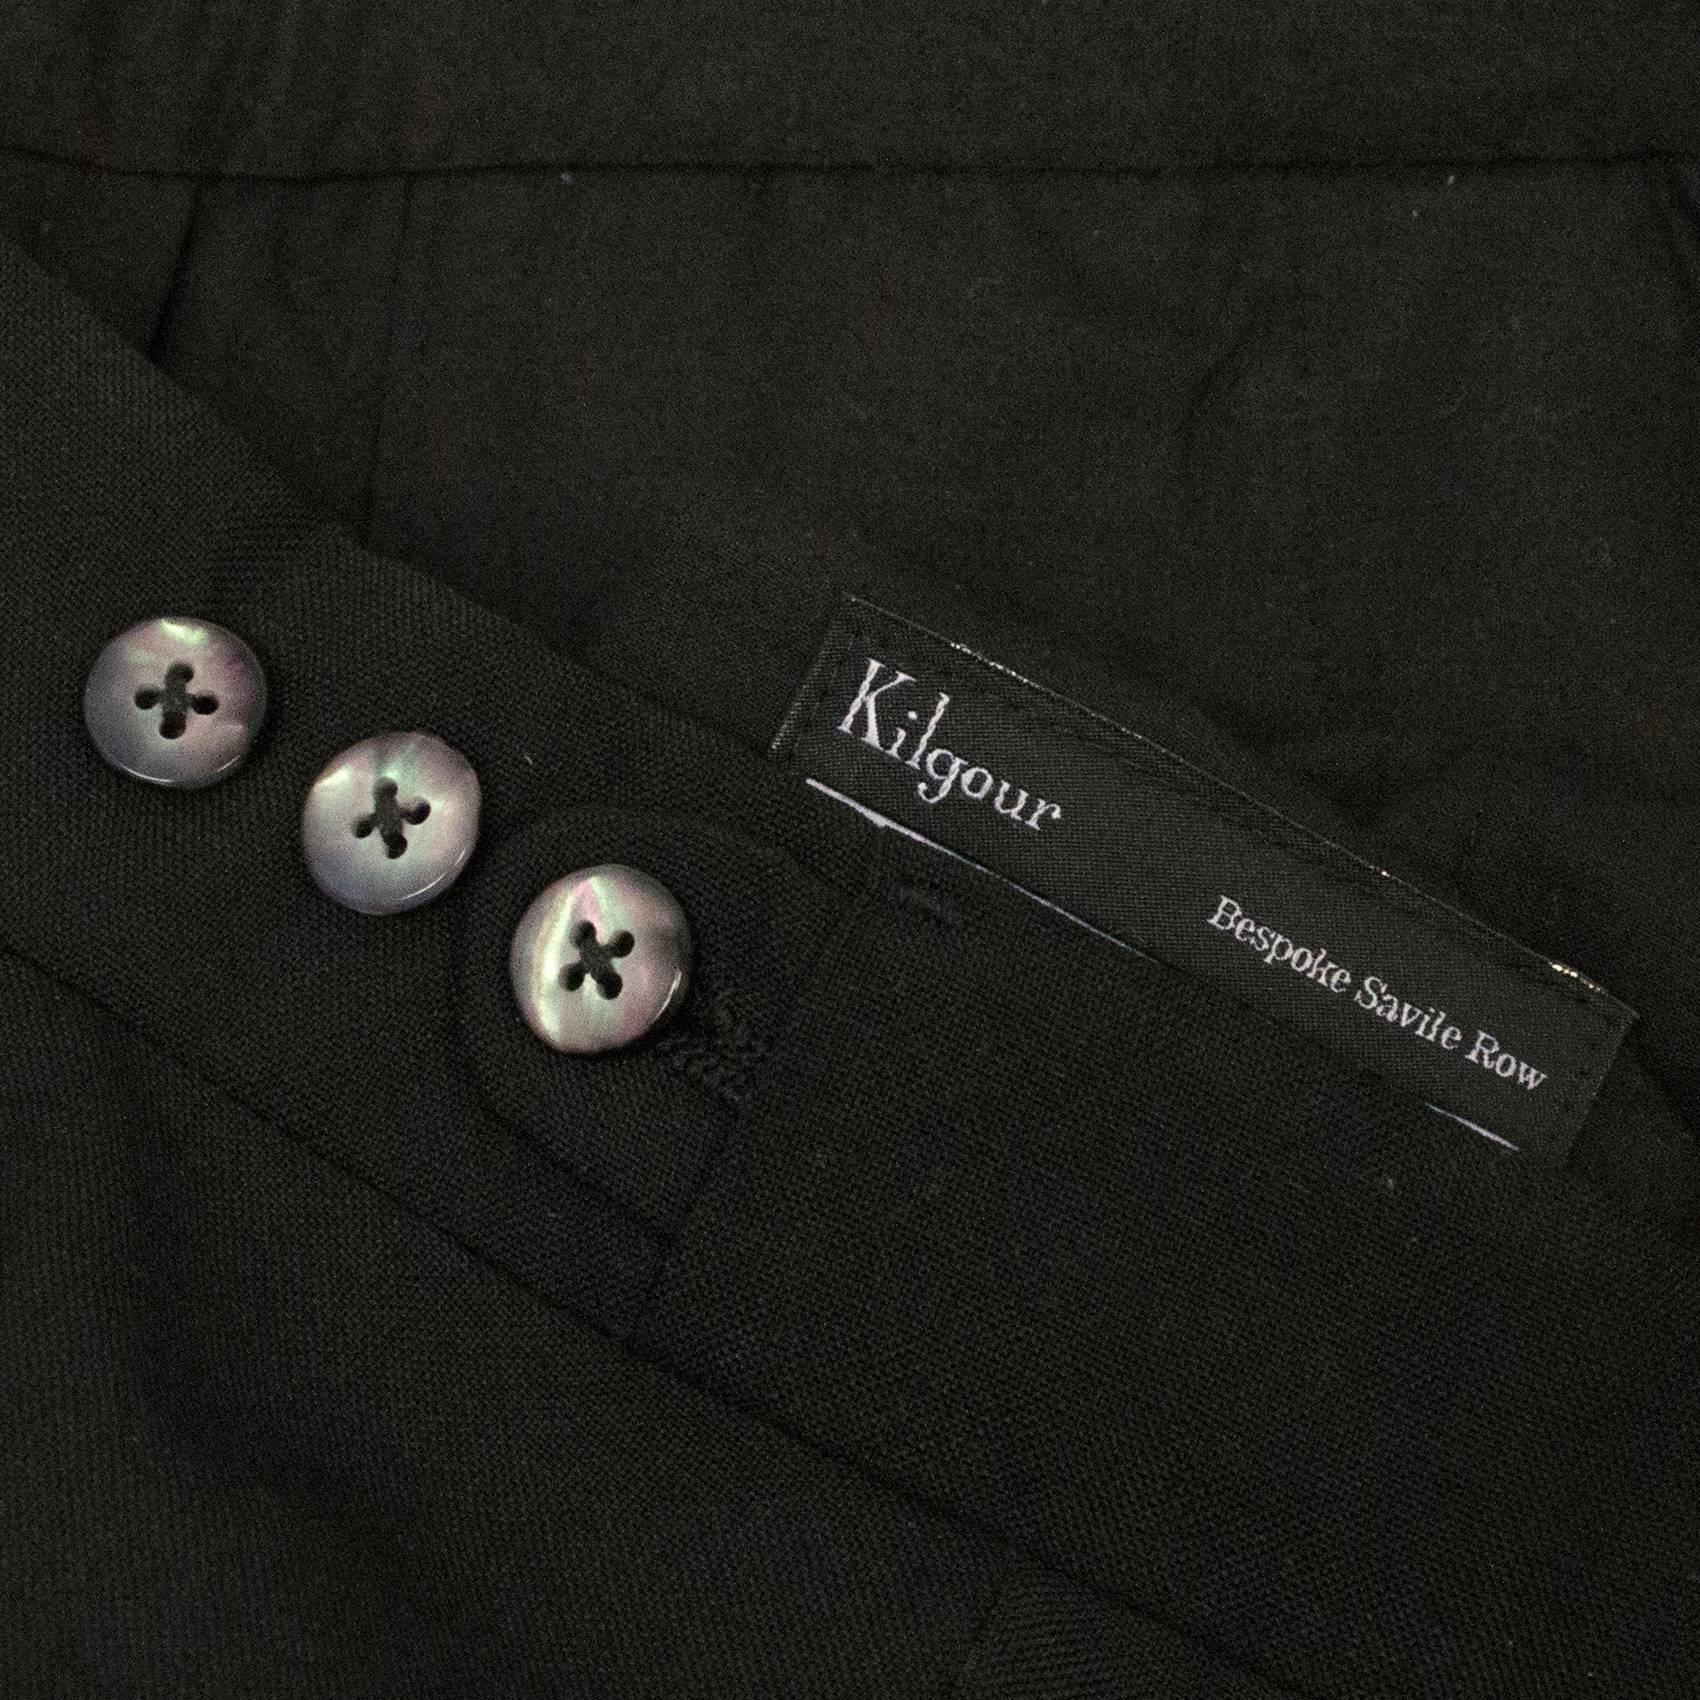 Kilgour Black Wool Trouser Suit For Sale 2